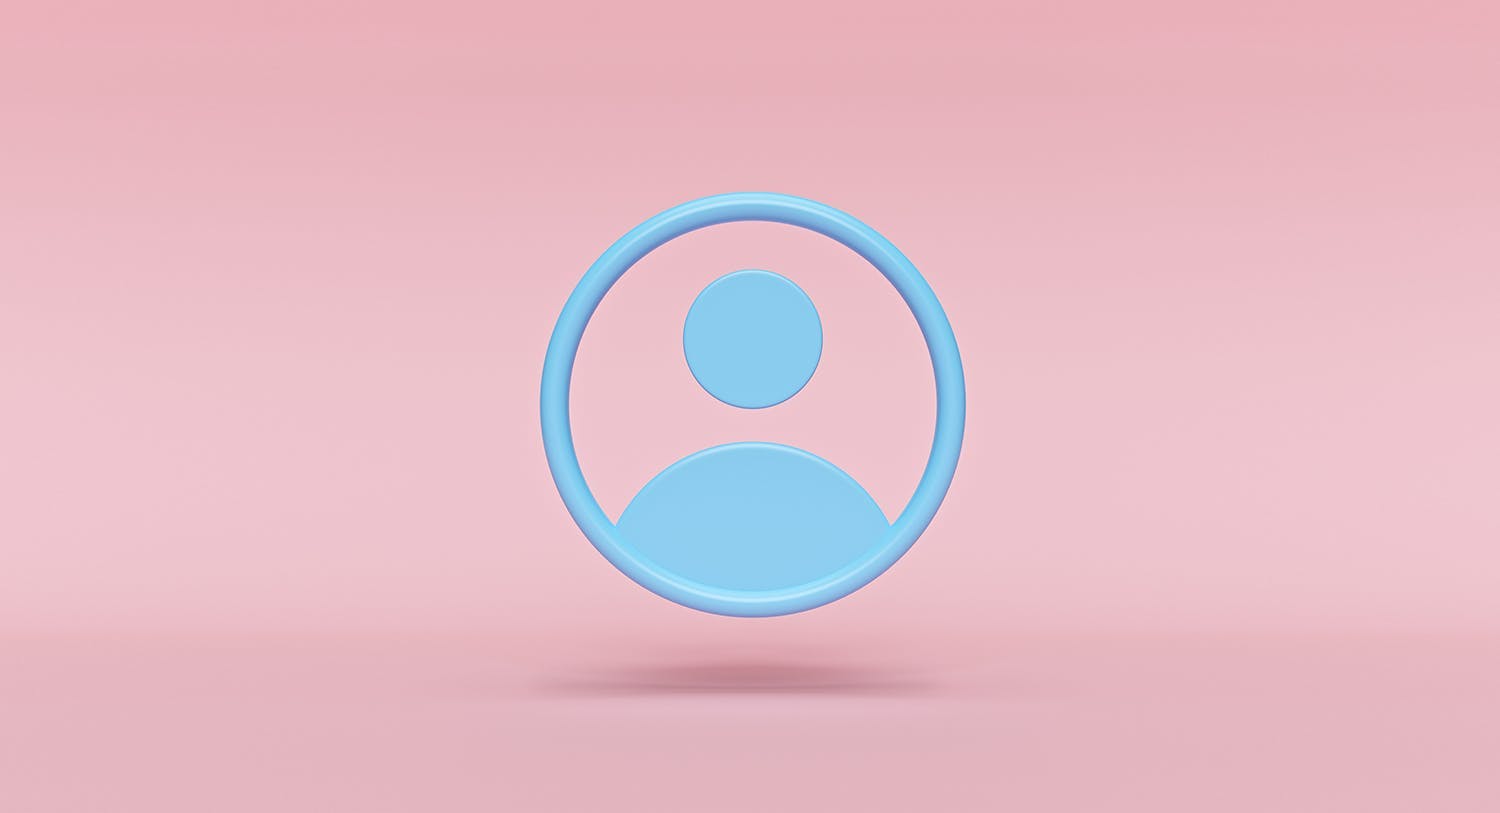 Une illustration d'une icône de profil vierge bleue disposée sur un fond rose